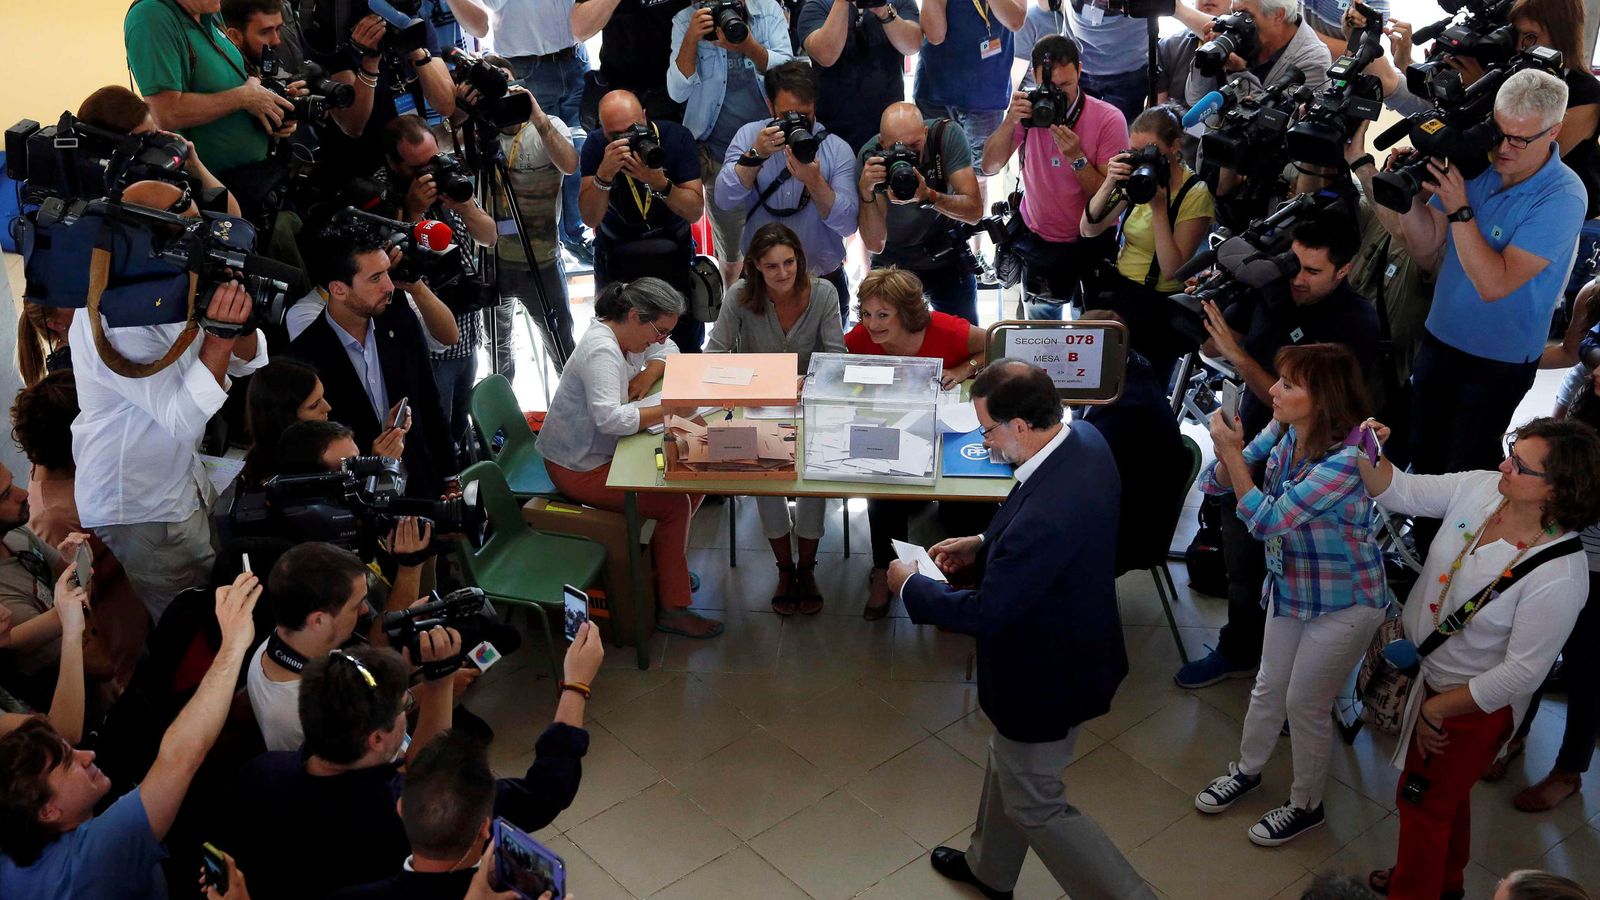 Foto: El líder popular se acerca a la mesa de votación ante numerosos reporteros gráficos. (Reuters)